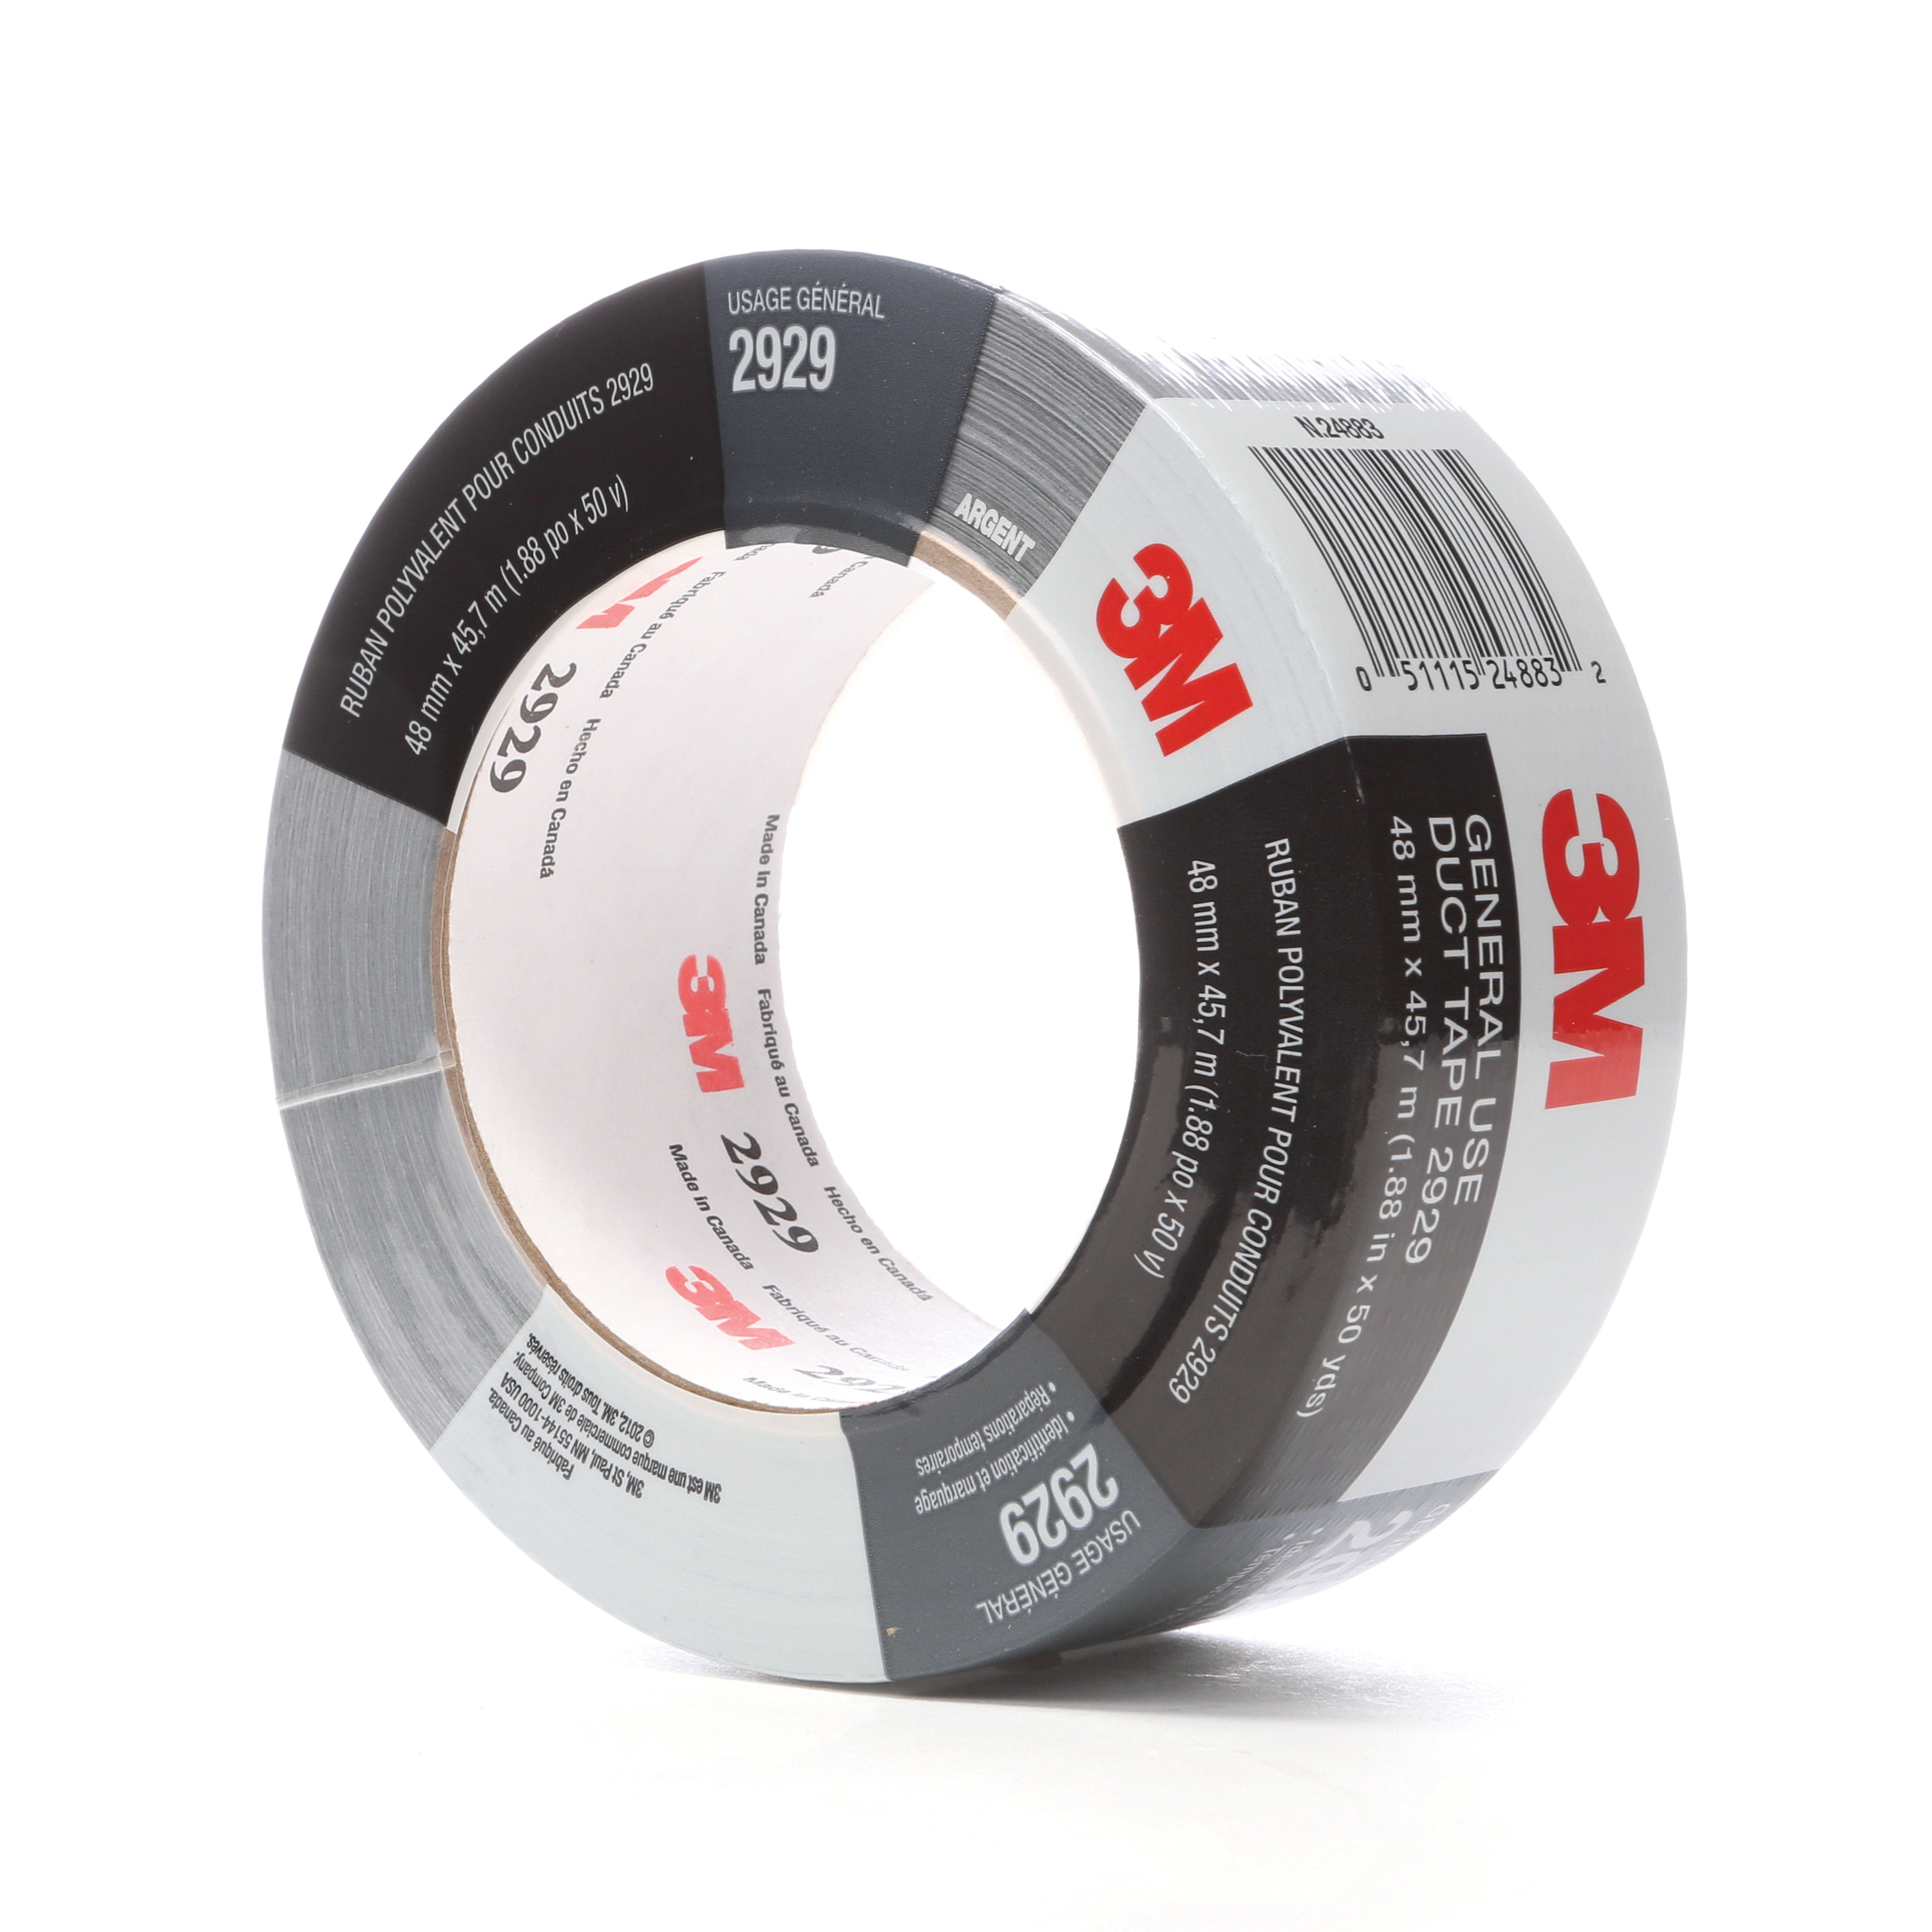 Airgas - 3MT051131-06995 - 3M™ 2 X 50 yd Black Series 3903 6.5 mil Vinyl  Duct Tape